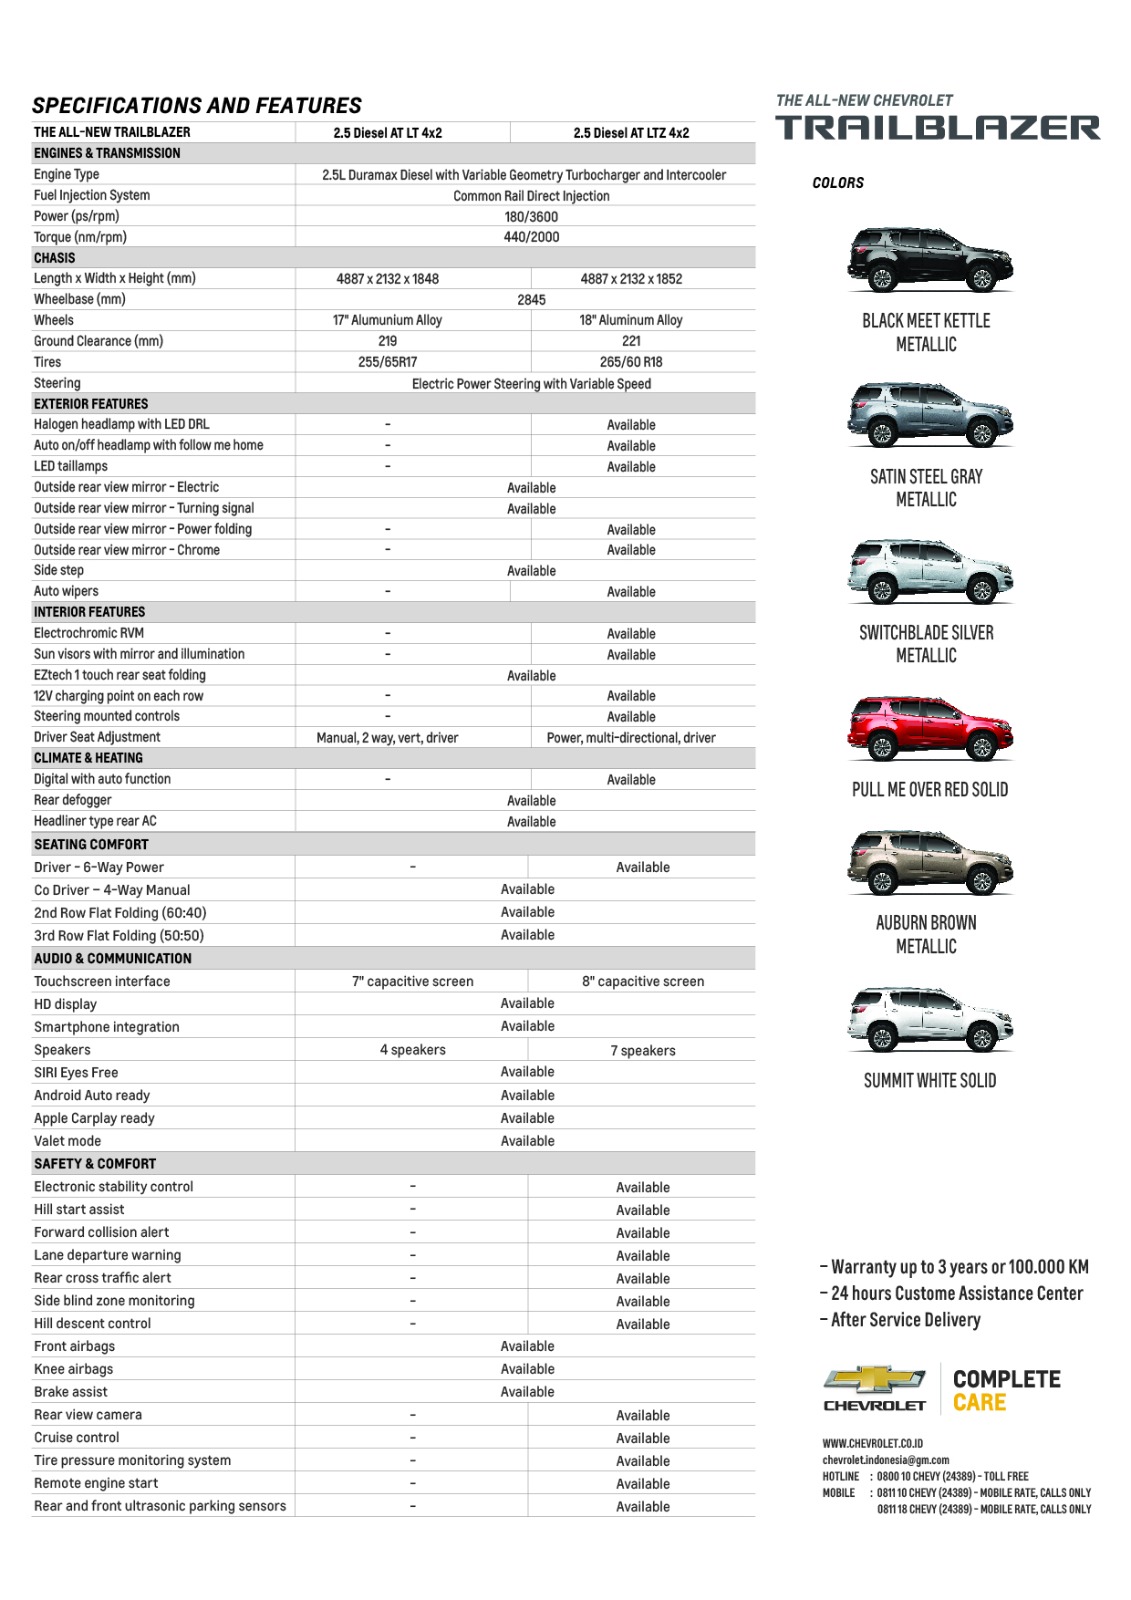 Chevrolet, IMG-20170223-WA0056: Chevrolet Trailblazer 2017 Resmi Mengaspal, Harganya Cukup Terjangkau!